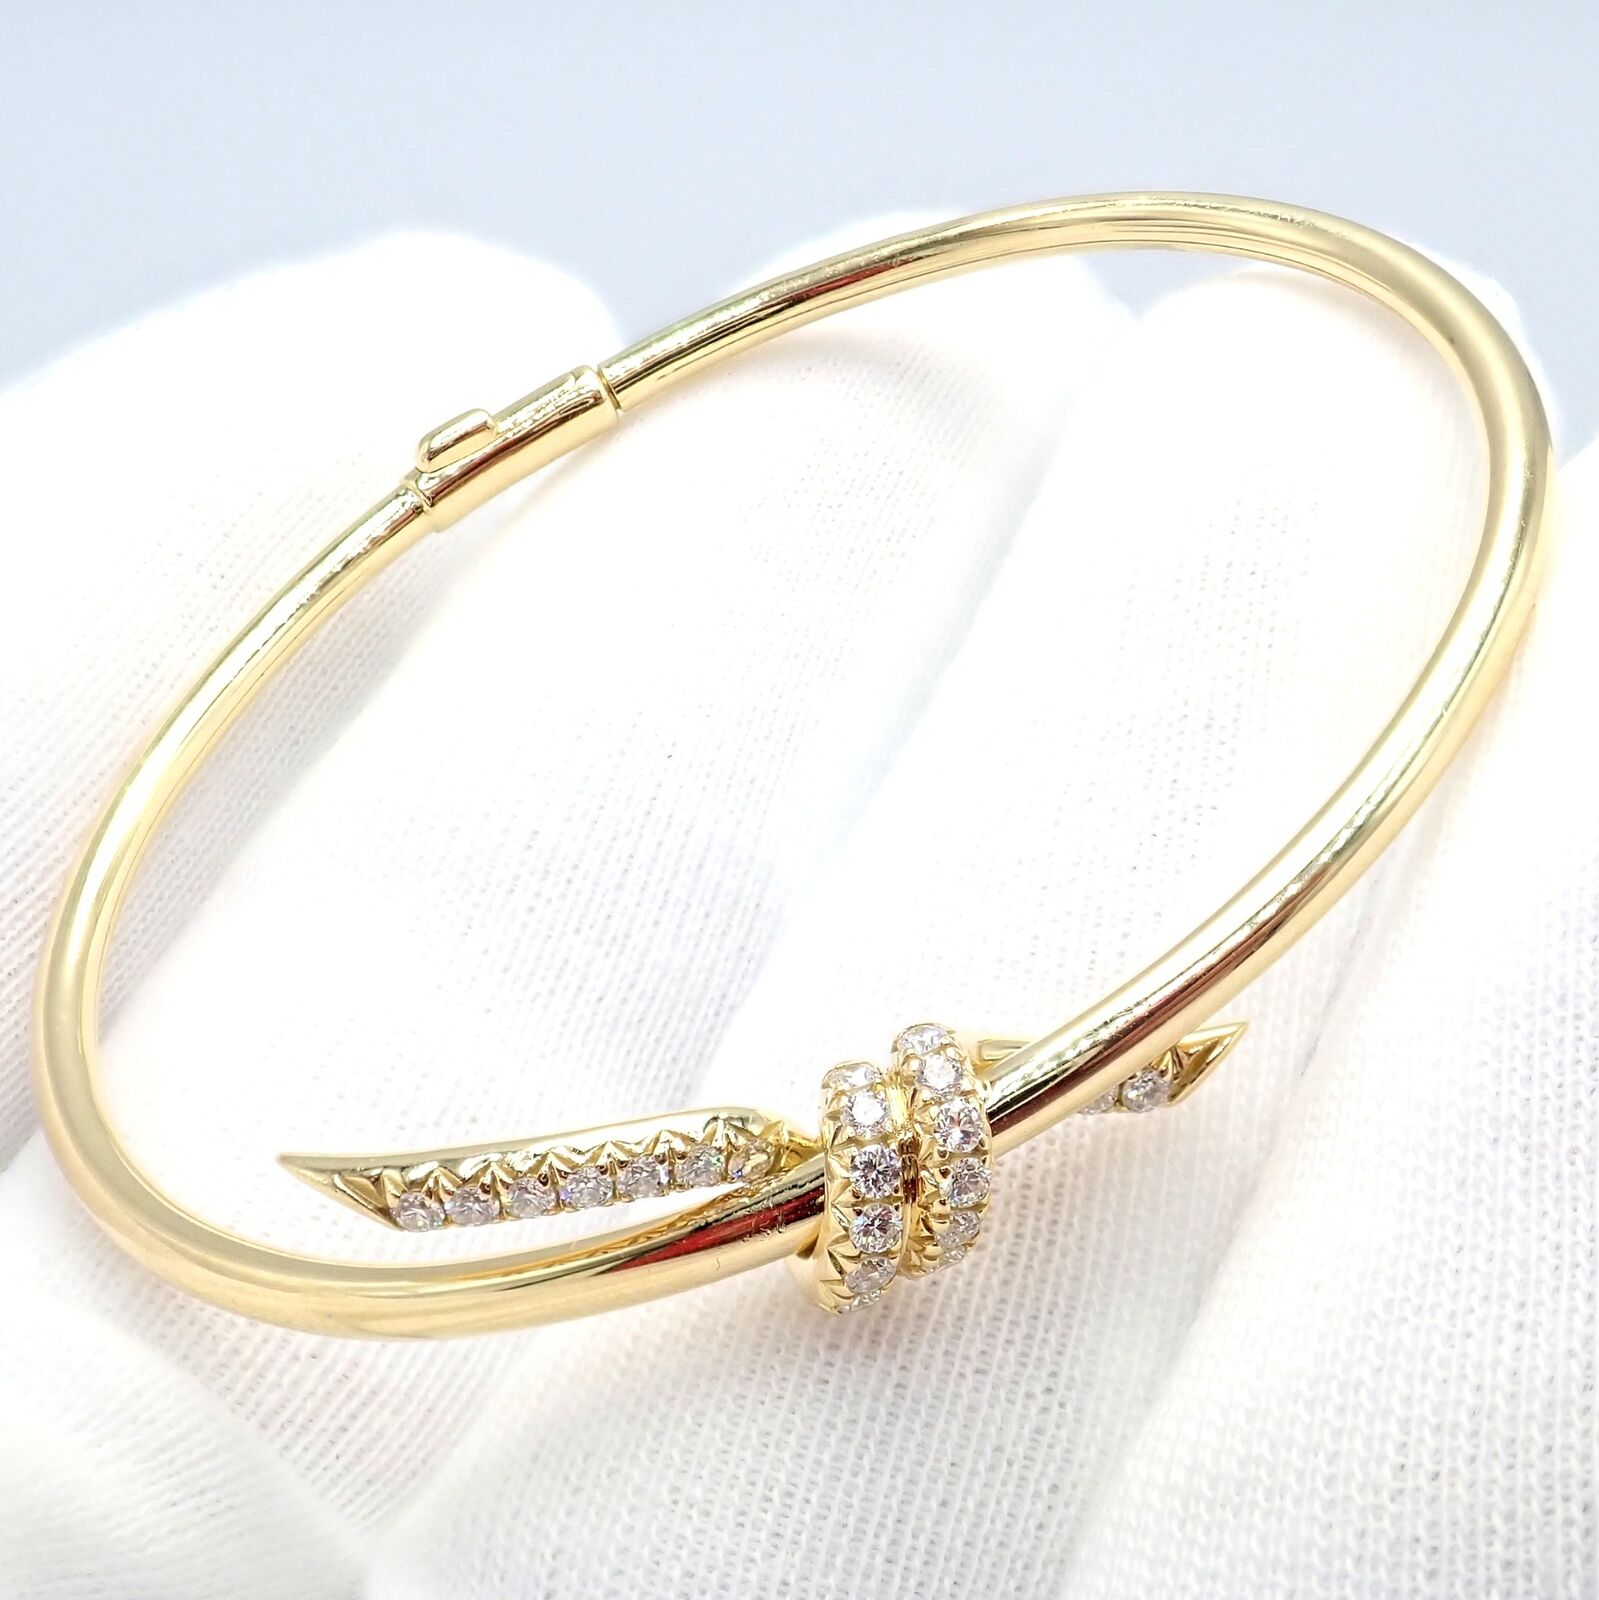 Tiffany & Co. Jewelry & Watches:Fine Jewelry:Bracelets & Charms Authentic! Tiffany & Co 18k Yellow Gold Diamond Knot Bangle Bracelet